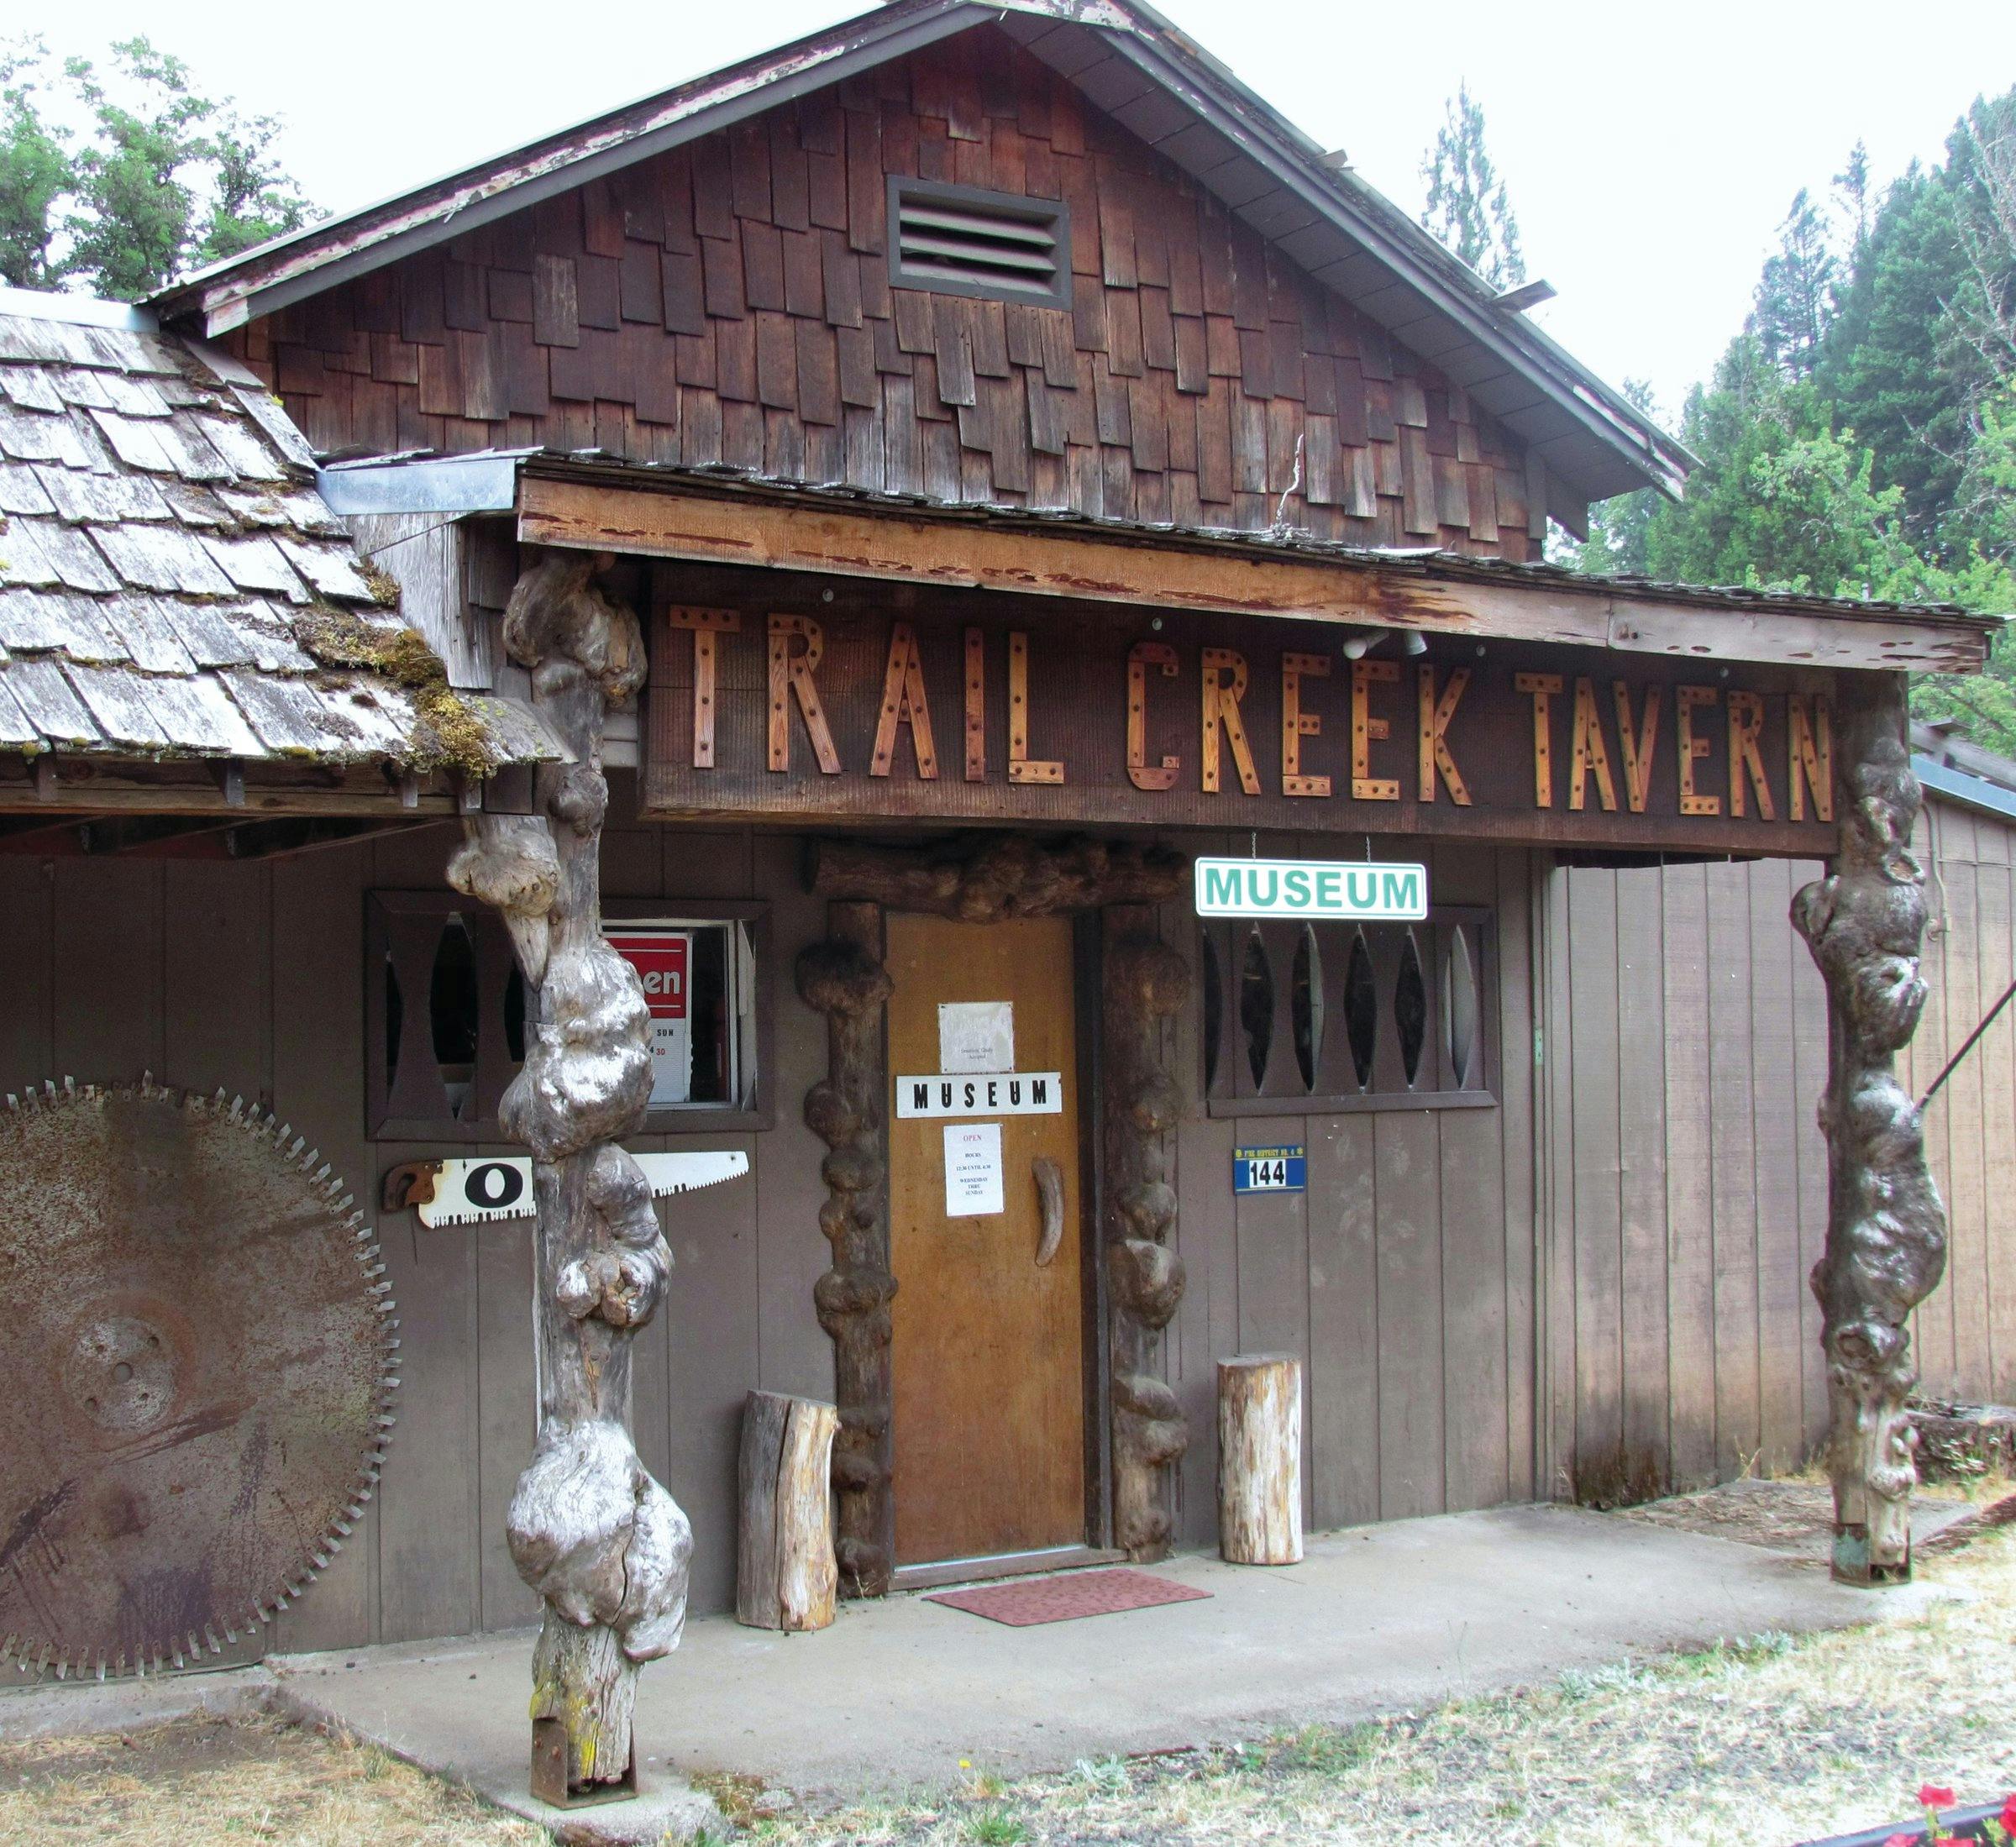 Trail Creek Tavern Museum